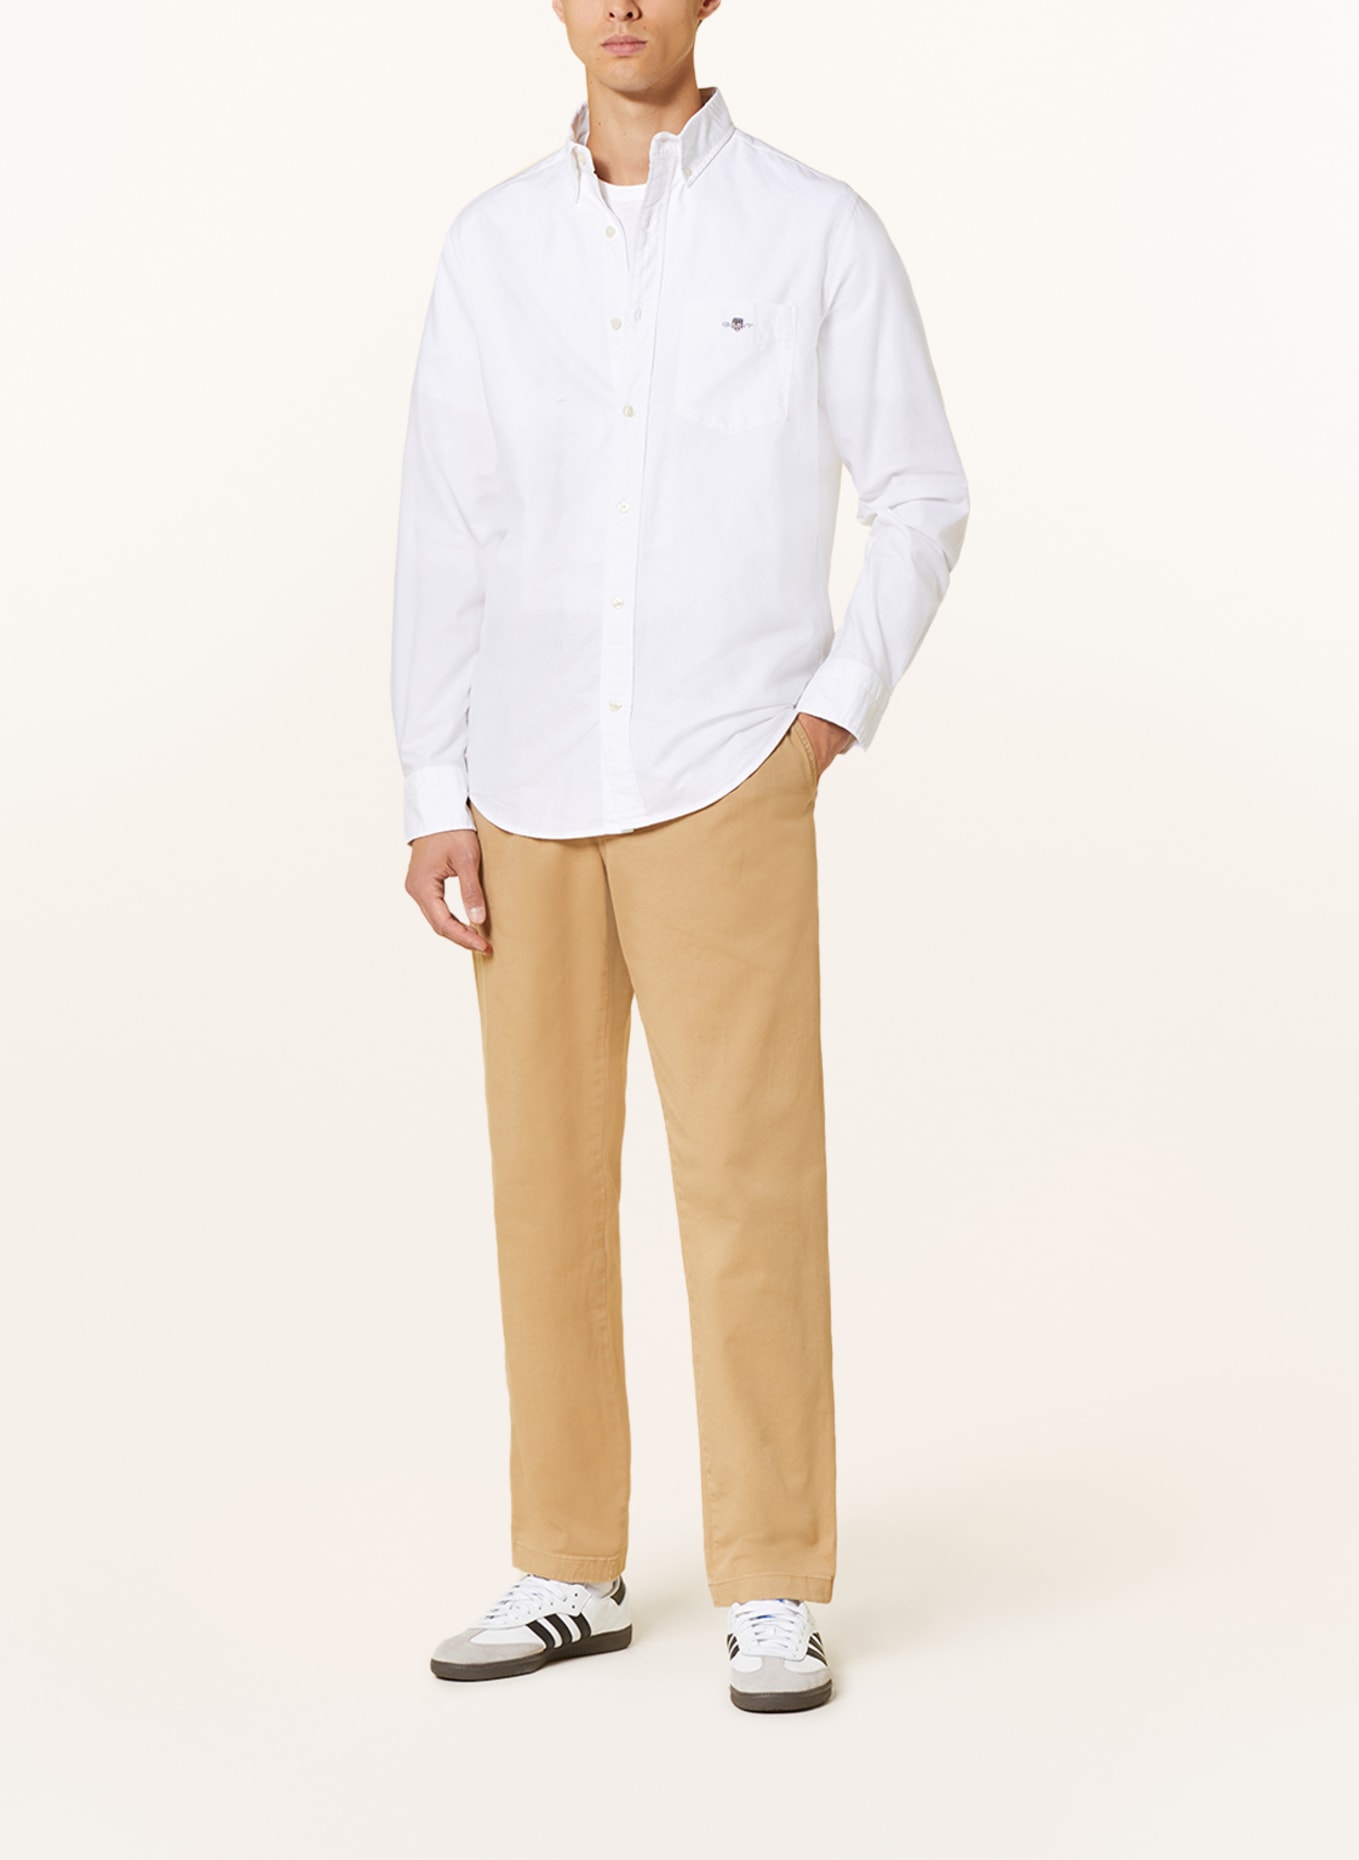 GANT Oxford shirt regular fit, Color: WHITE (Image 2)